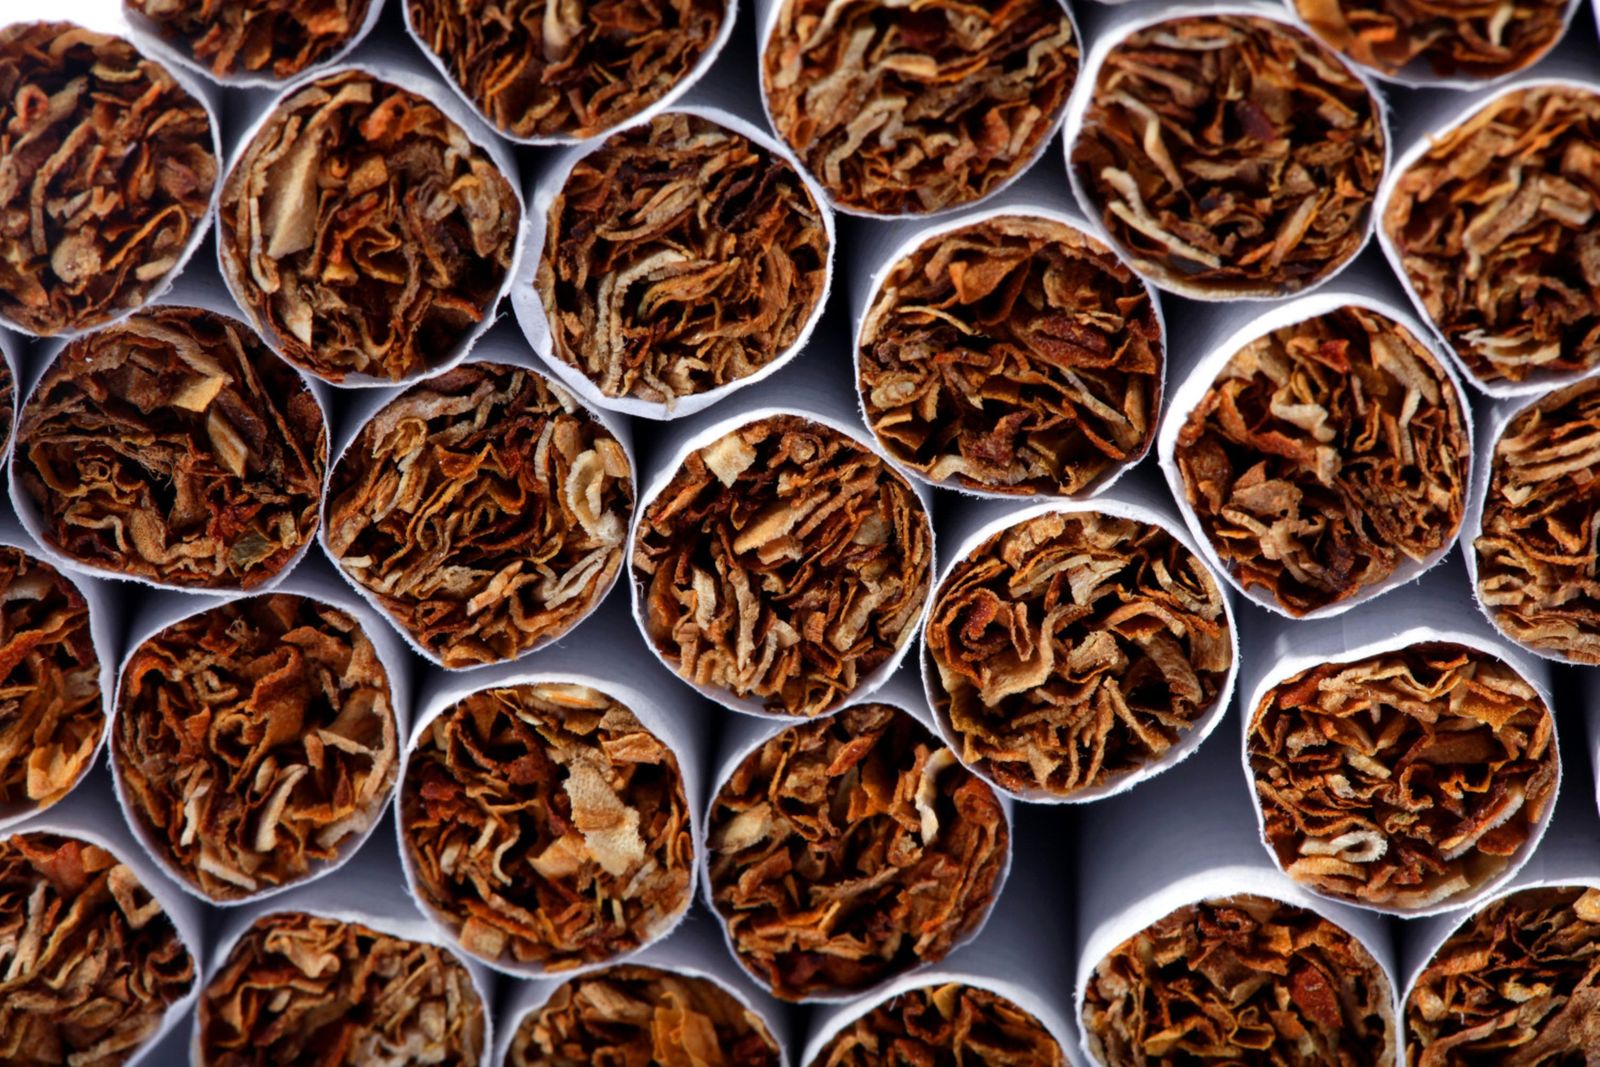 انسحاب 3 شركات من مزايدة رخصة إنتاج السجائر في مصر